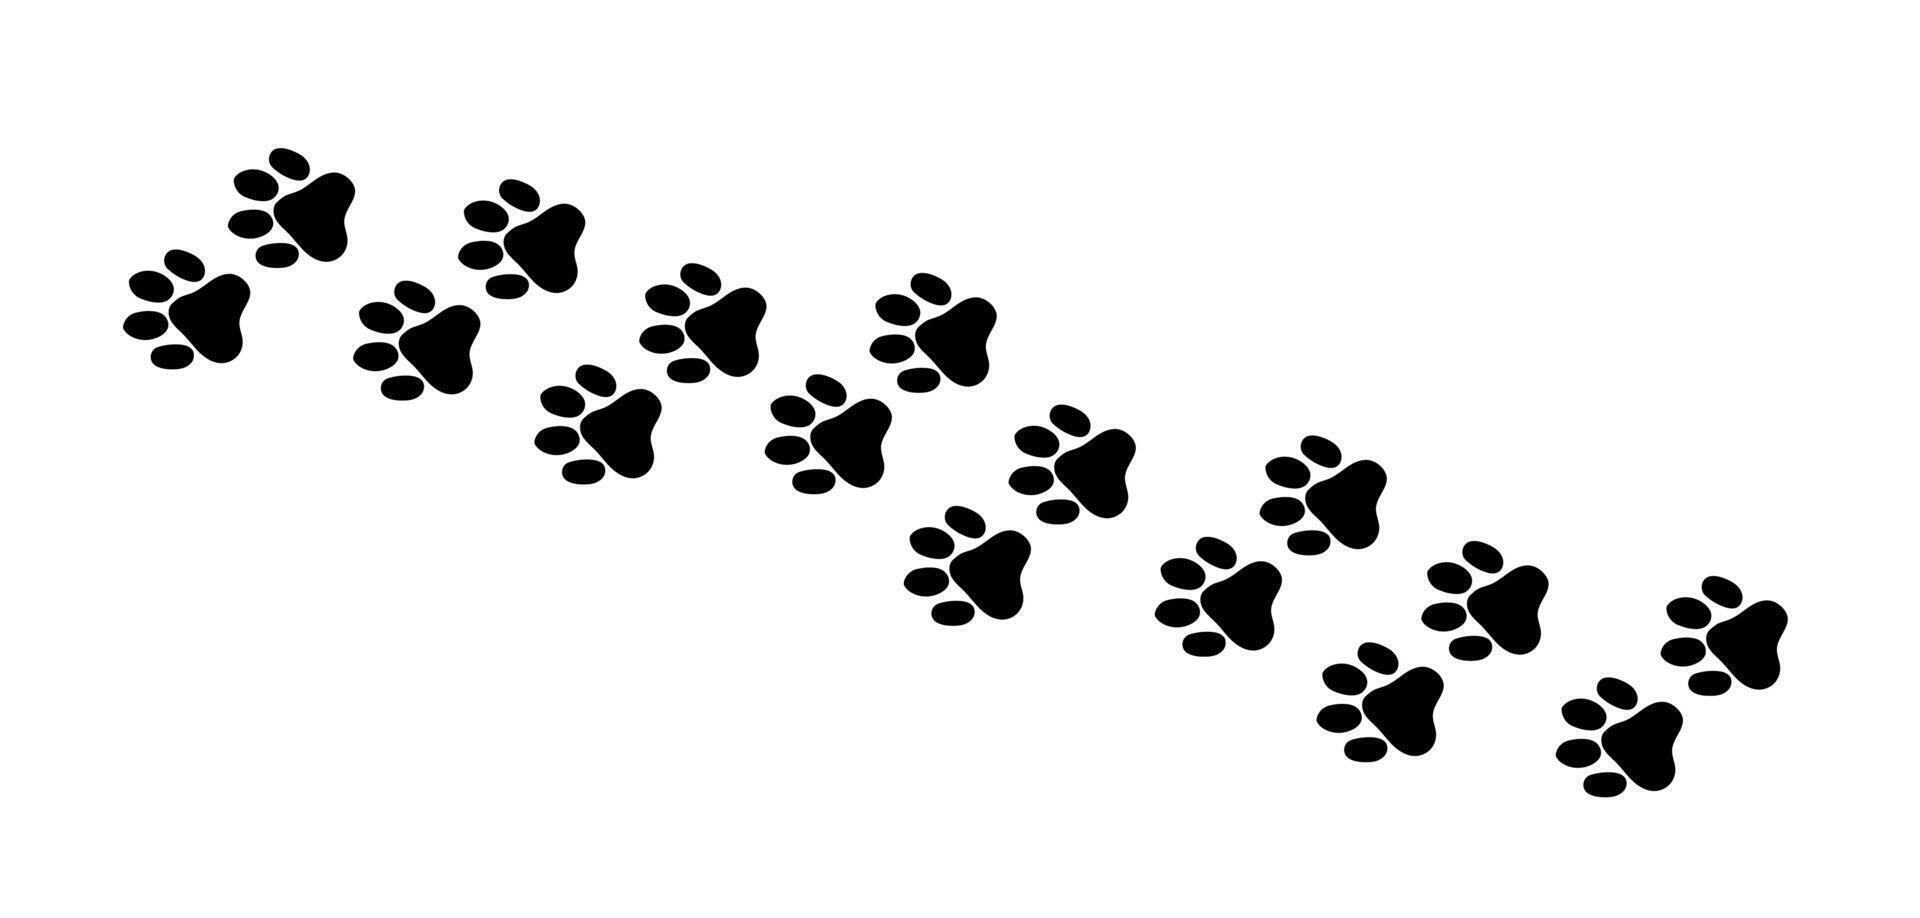 allí son muchos huellas de siluetas de negro patas de un salvaje animal - un gato. ilustración vector